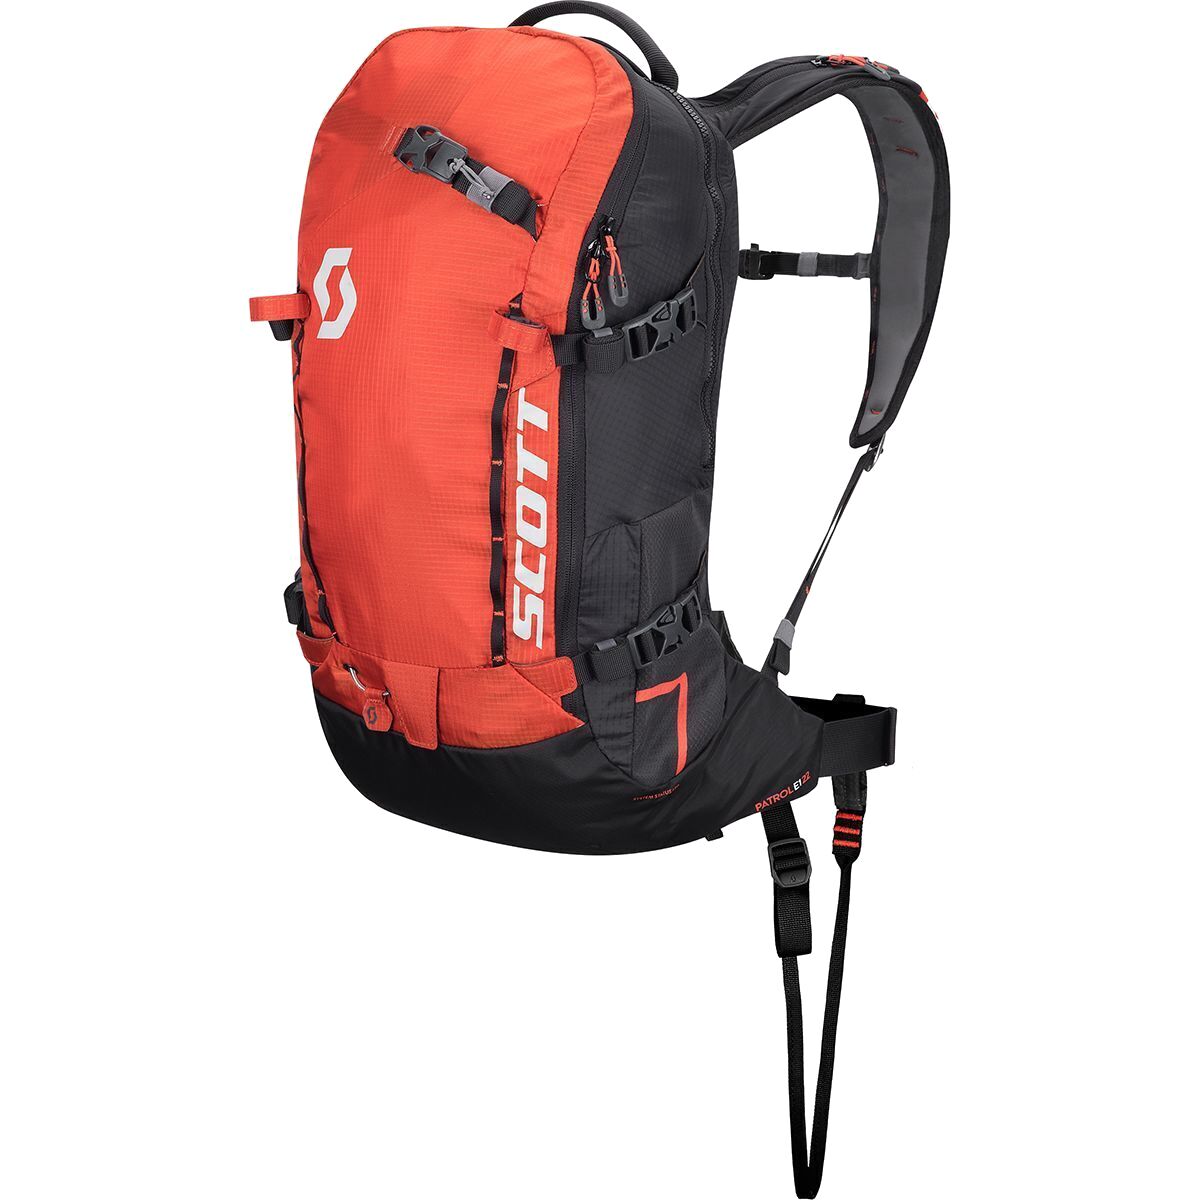 Scott Backcountry Patrol E1 22L Backpack Kit Burnt Orange/Black